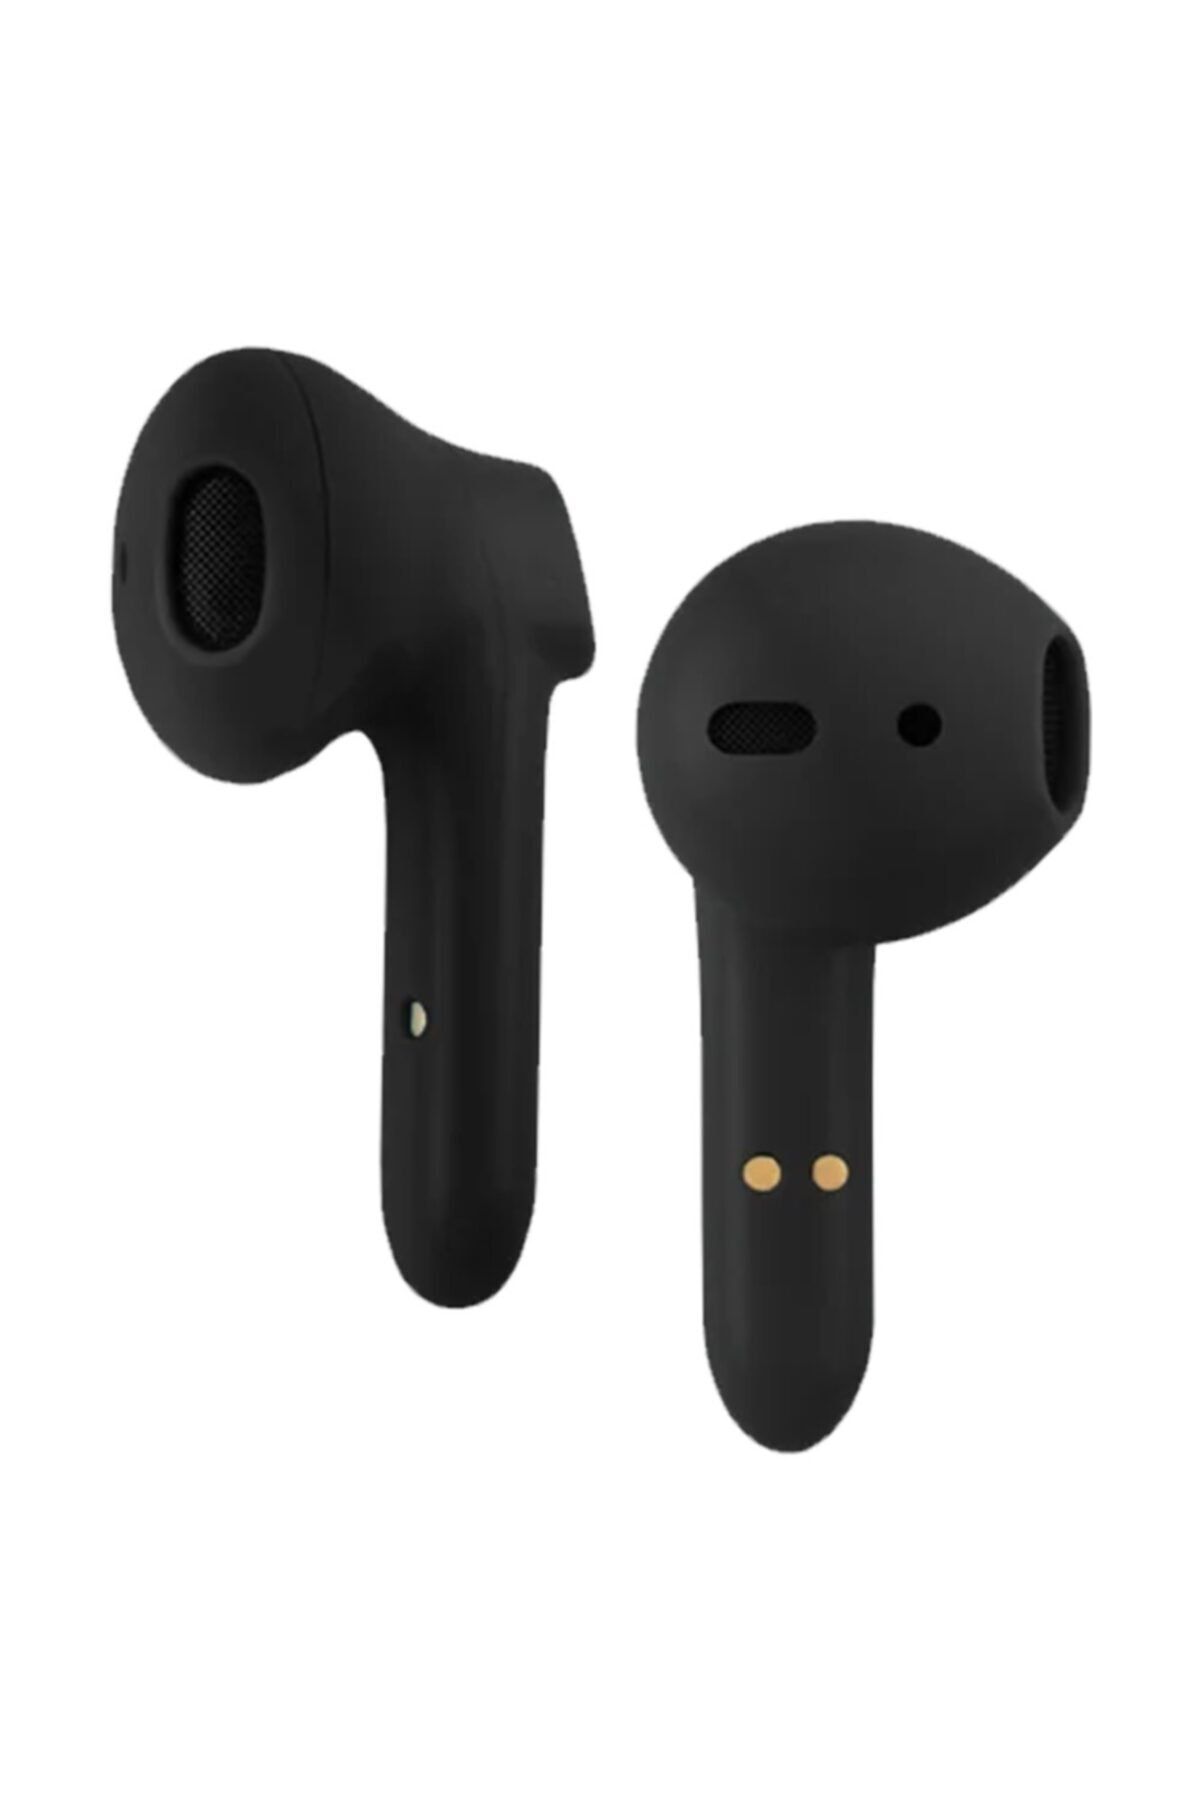 JBL MG-S19 Bluetooth Écouteurs Casque Sans Fil 5.0 Tws Casque Double  Écouteurs Basse Son Pour Android & Iphones - MAH00170 - Sodishop